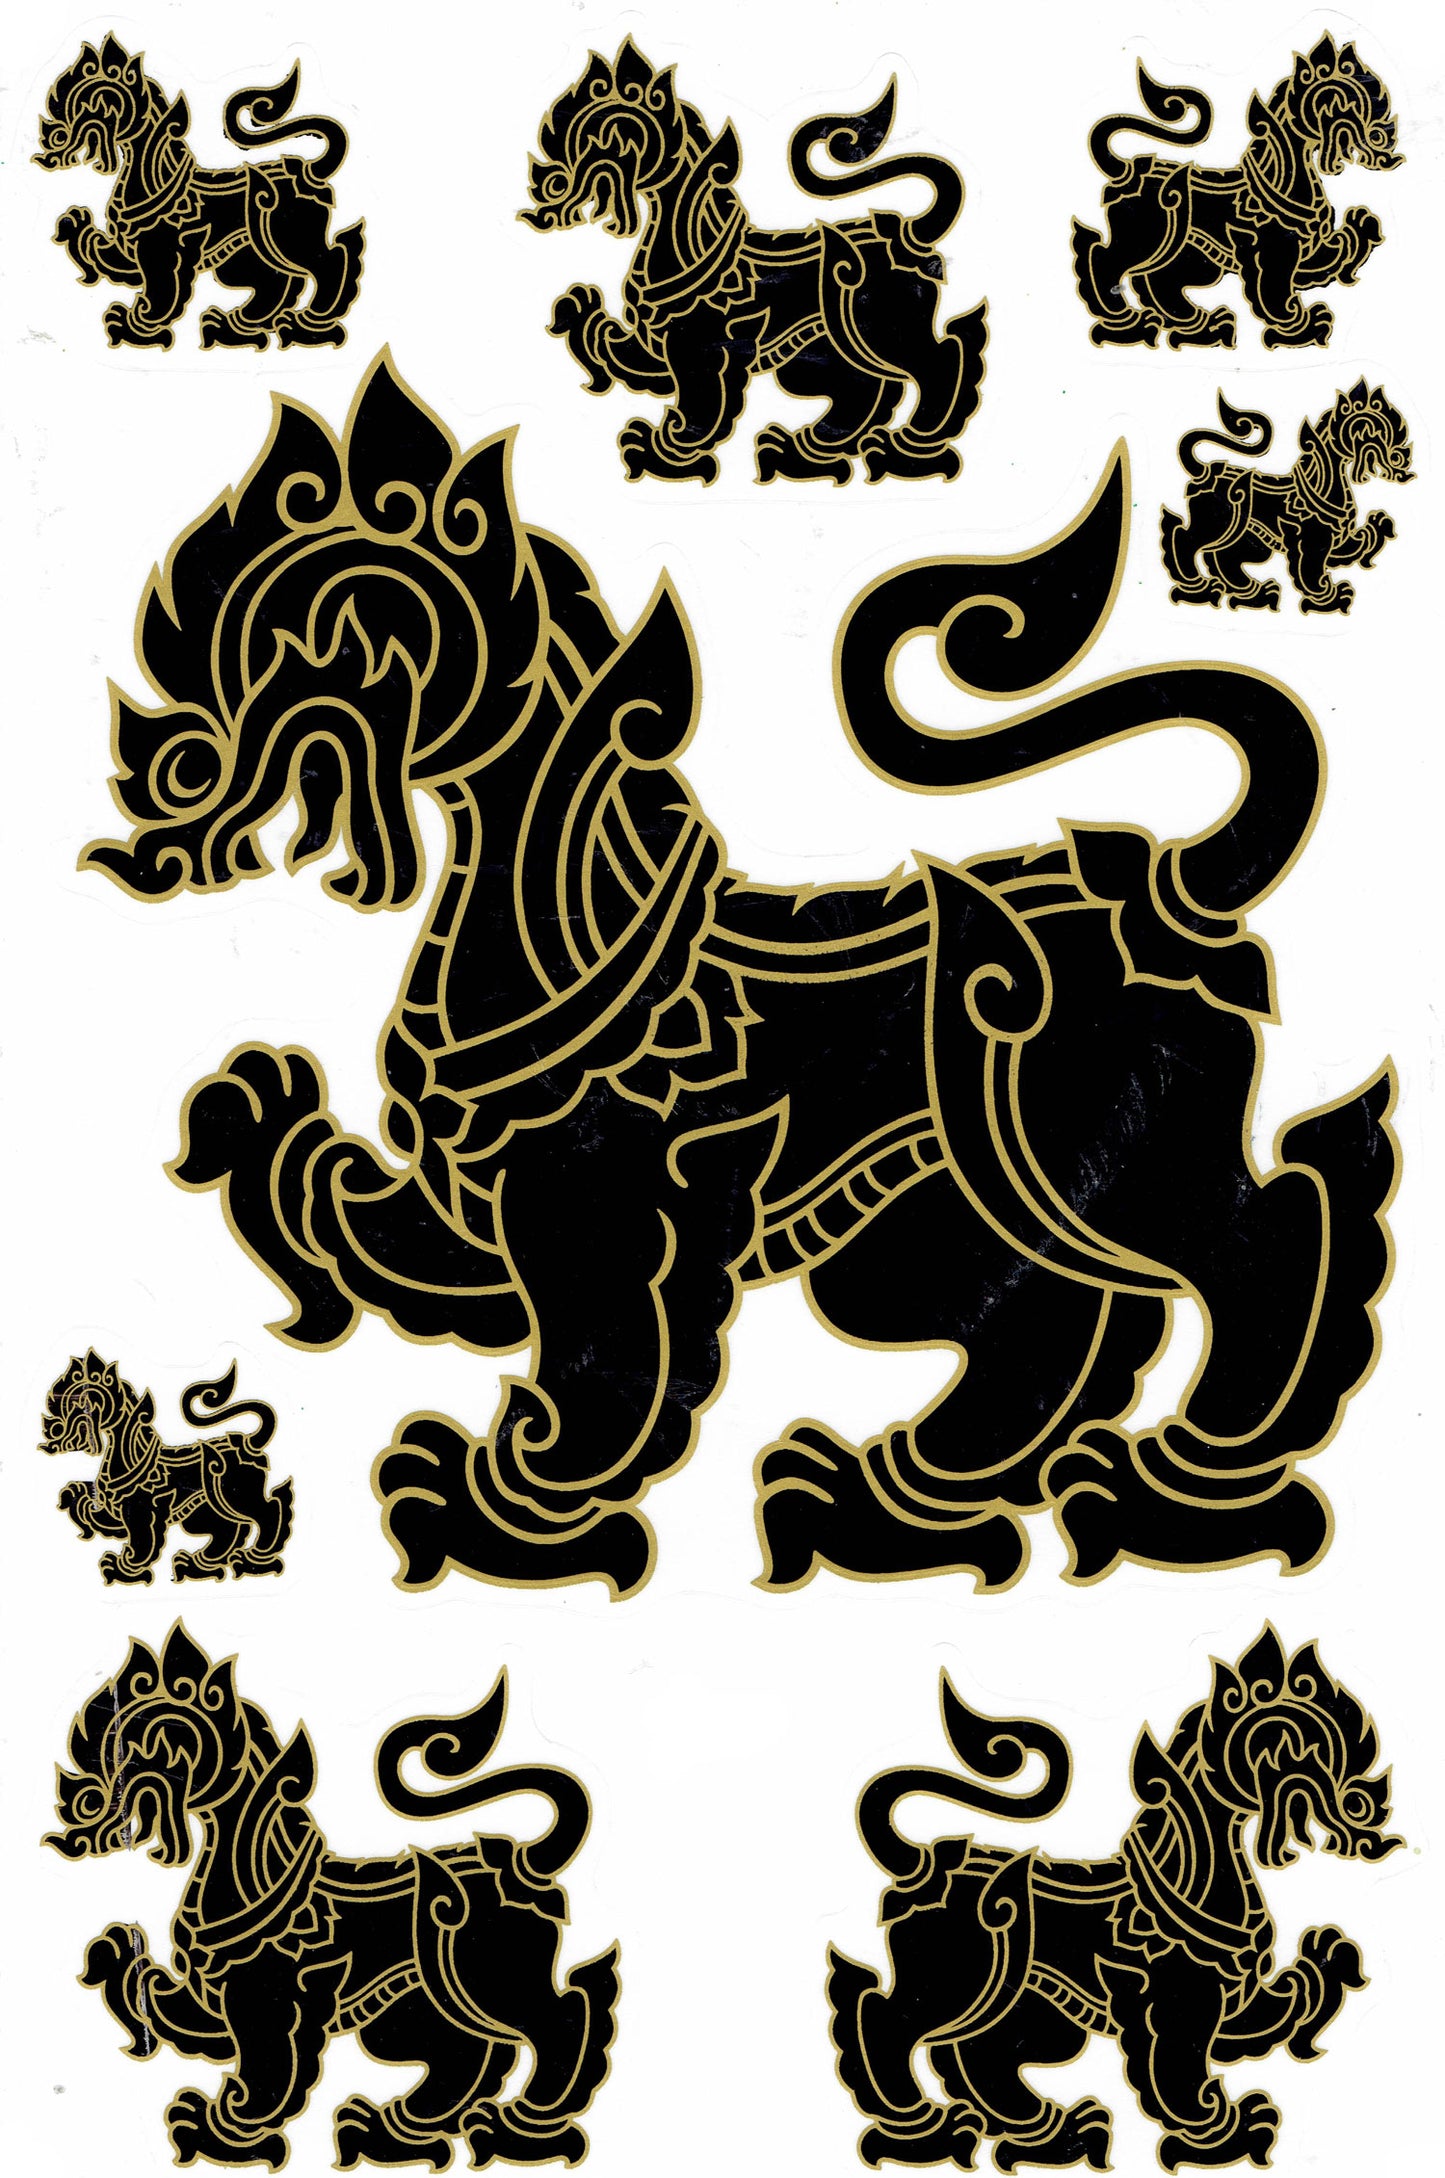 (Schwarz) Chinesischer Löwe und Drachen Aufkleber Sticker - Perfekt für Motorrad, Roller, Skateboard, Auto Tuning, Modellbau - Selbstklebend